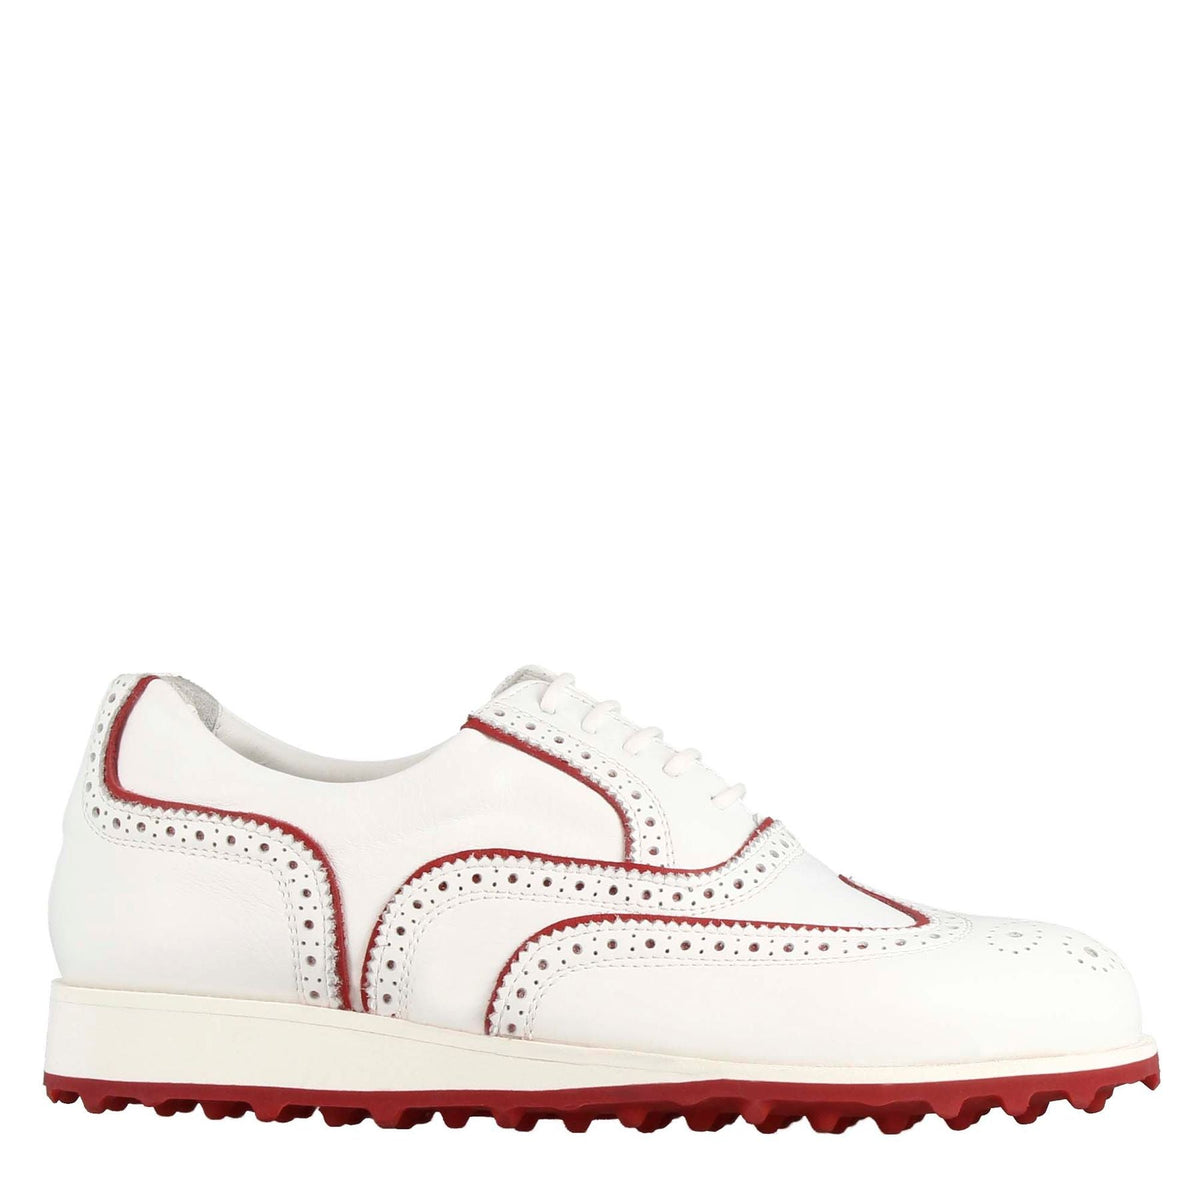 Handgefertigte Damen-Golfschuhe aus weißem Leder mit roten Verzierungen